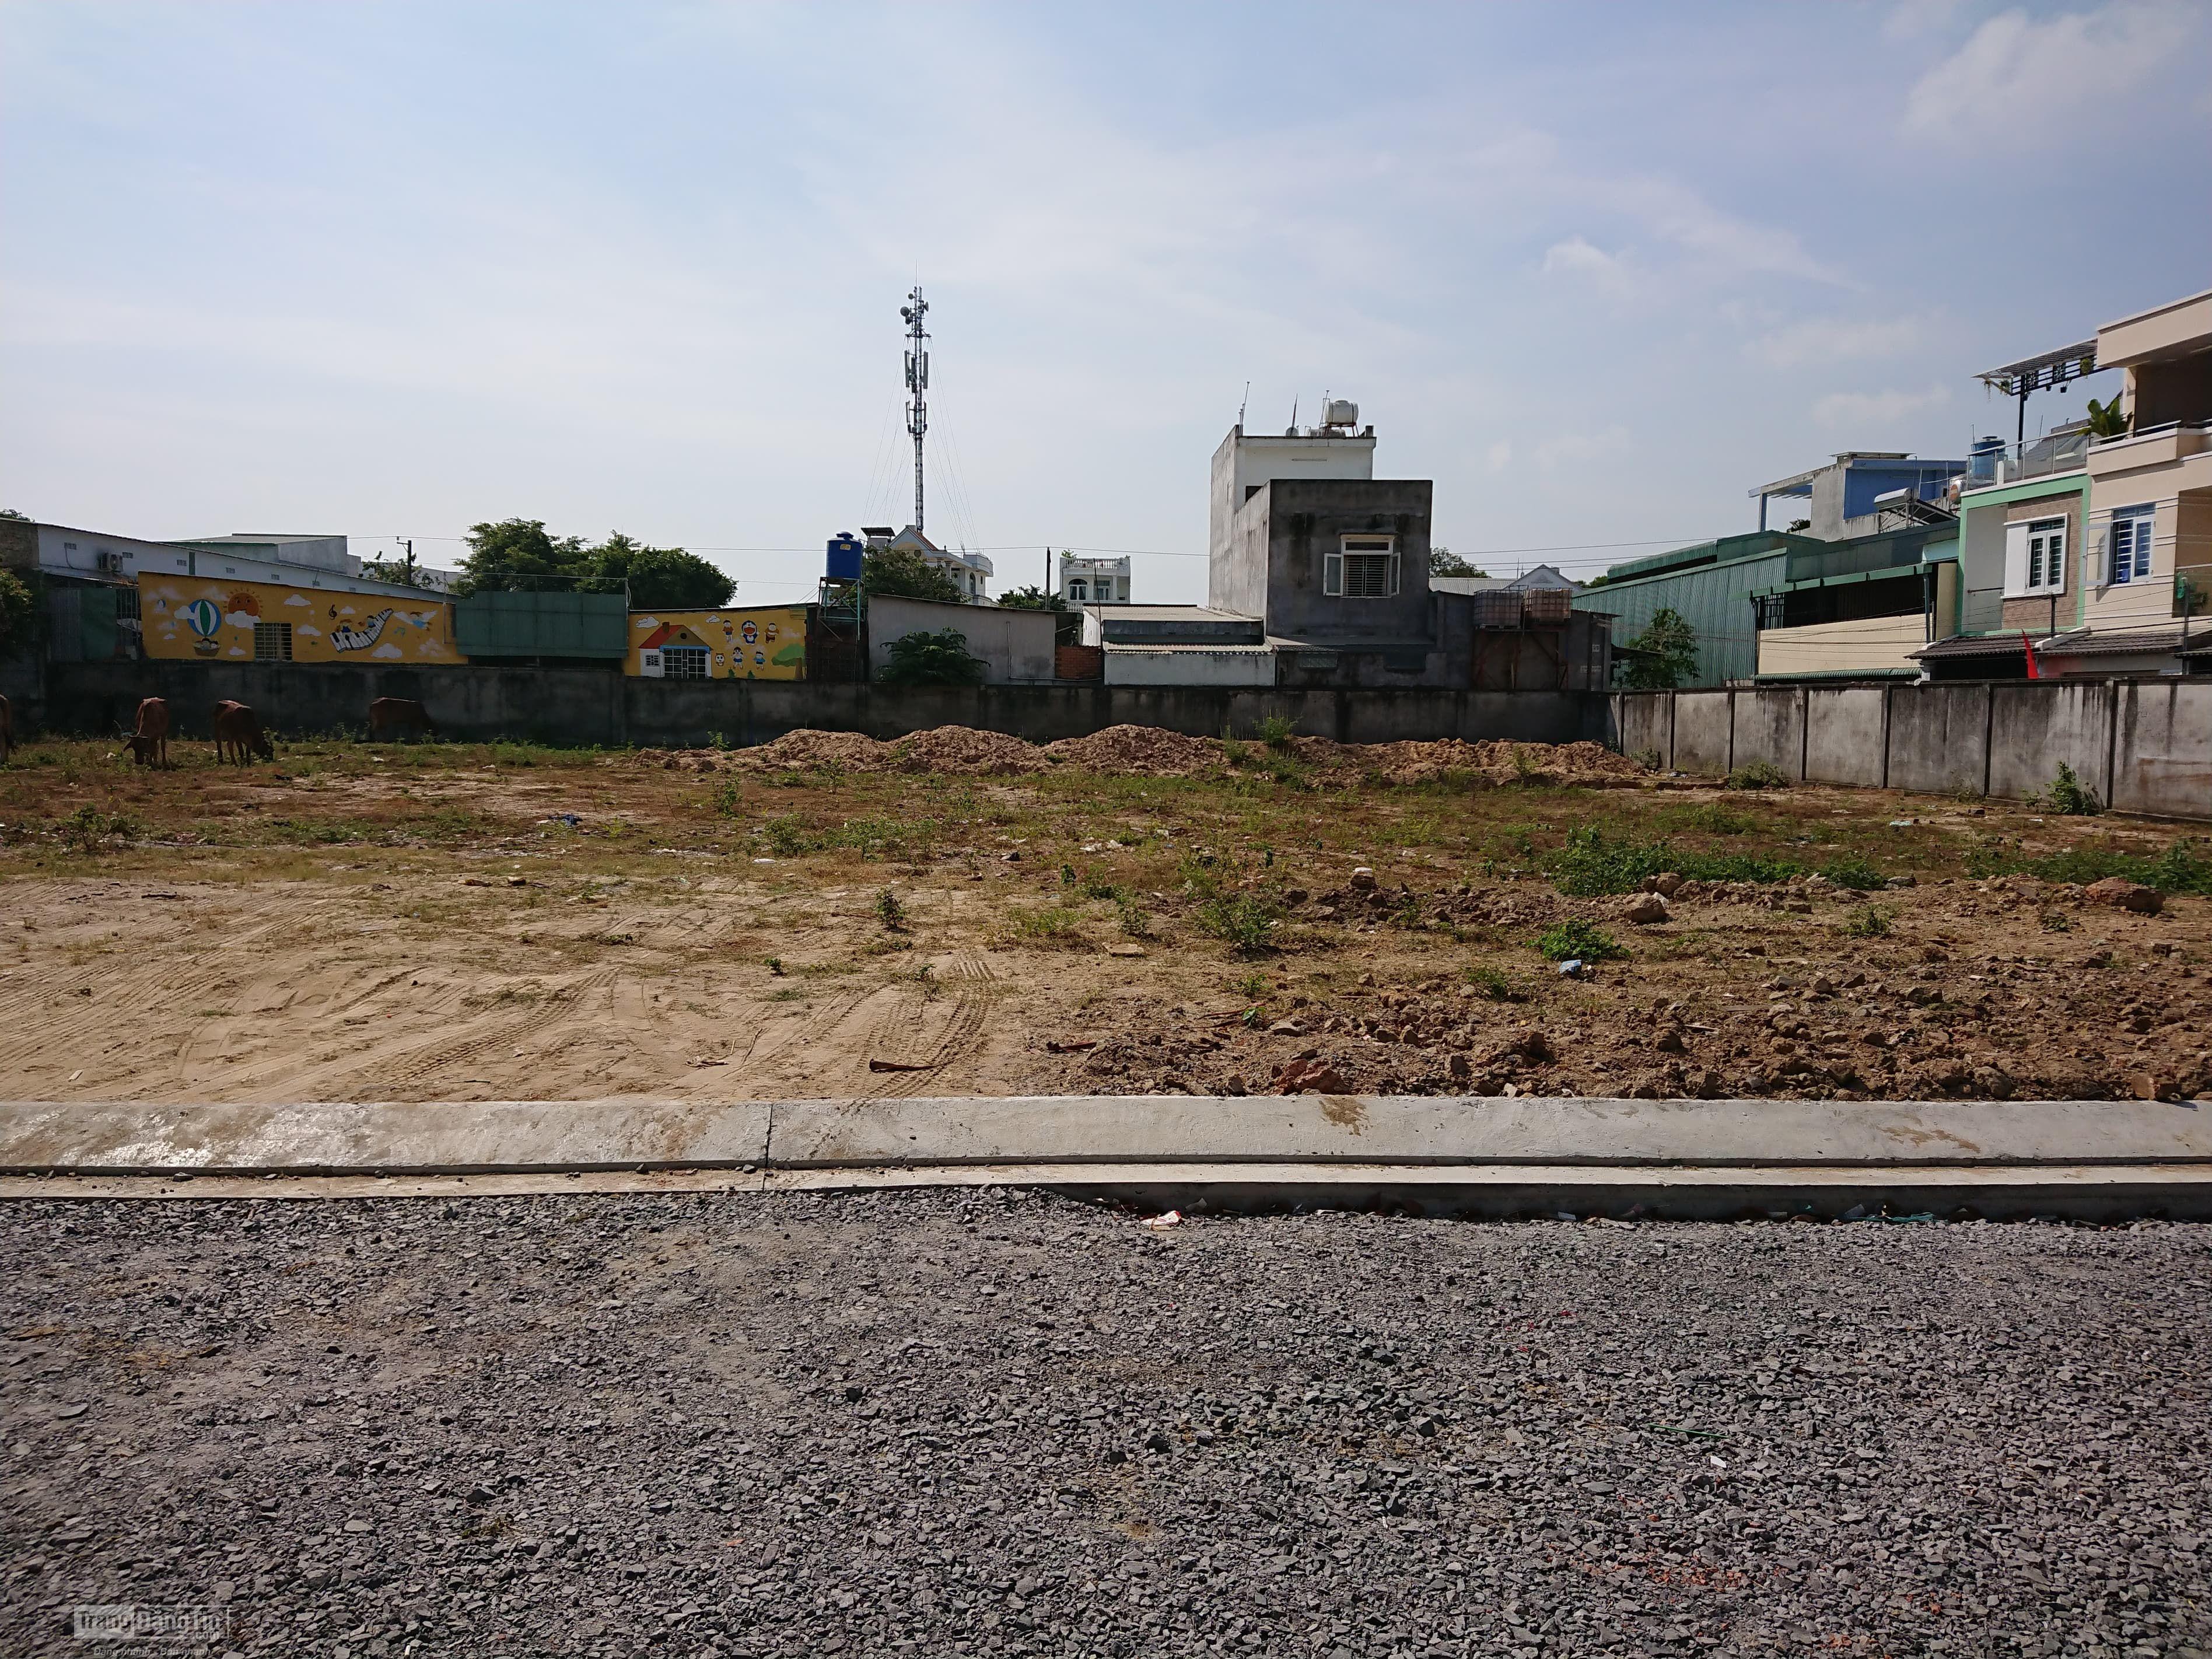 Phú Hưng Land mở bán 17 lô đất ngay bến xe miền đông Quận 9 giá 40tr/m2